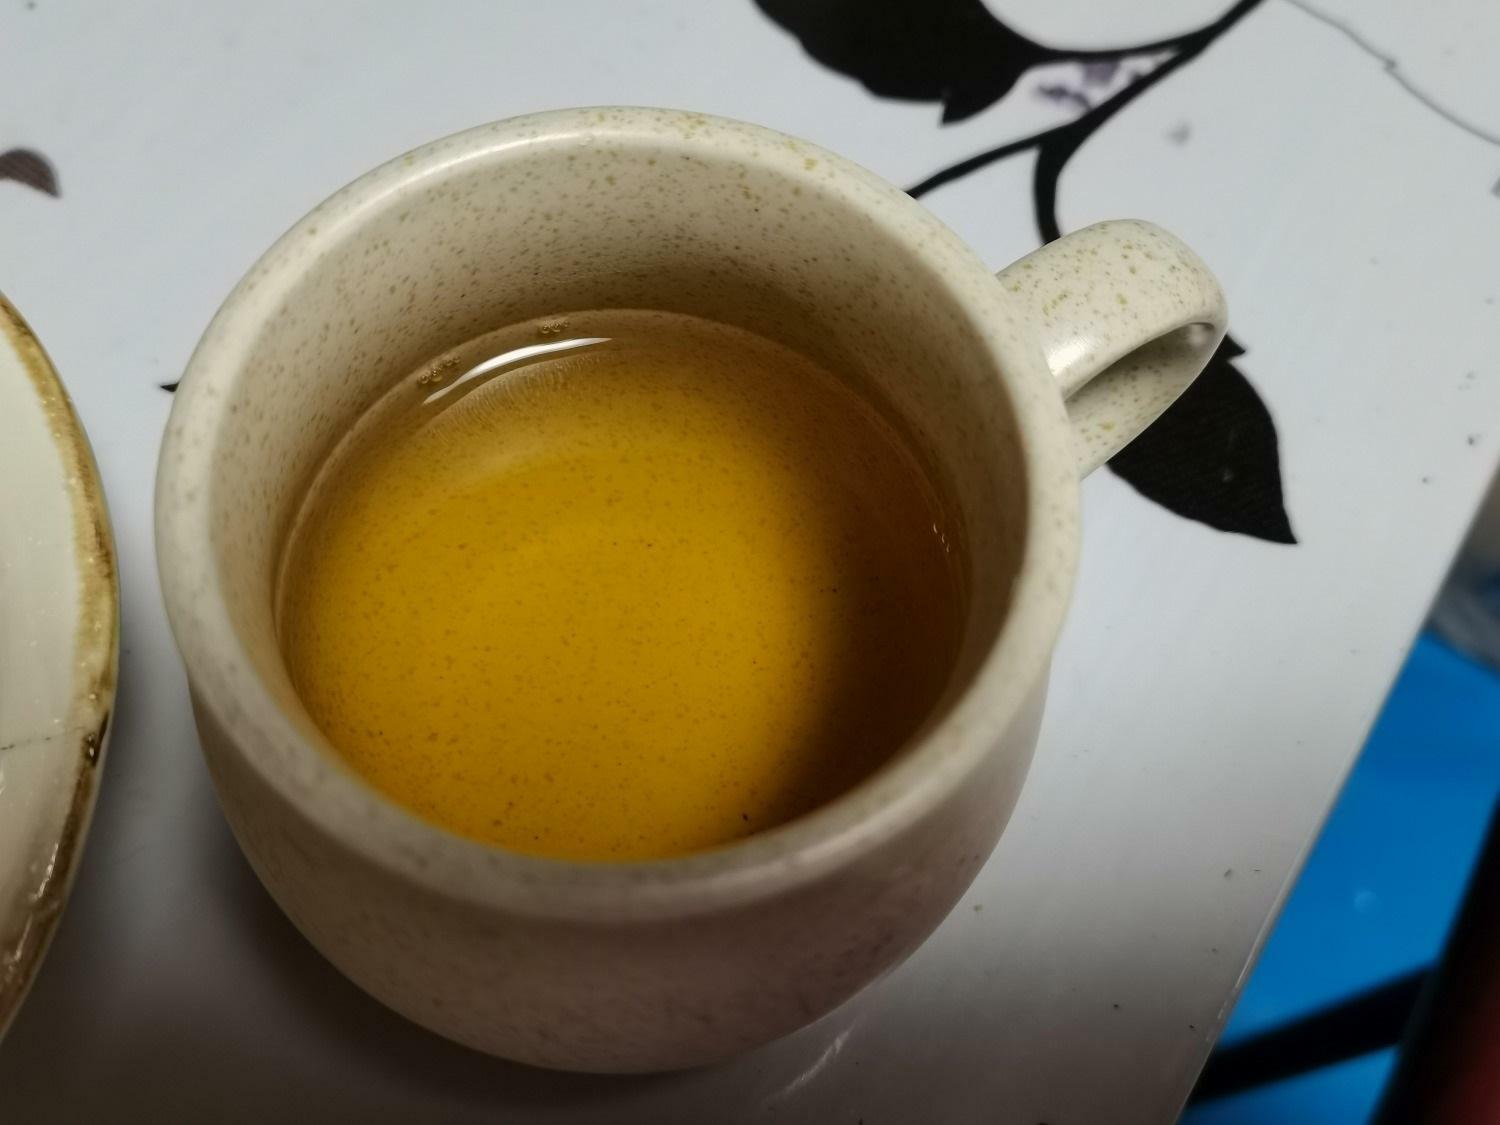 実のお茶は甘みがあり、キャラメルの香りがしました。葉のお茶は渋みがあるものの焙煎されて飲みやすくなっており、甘いモノと相性抜群